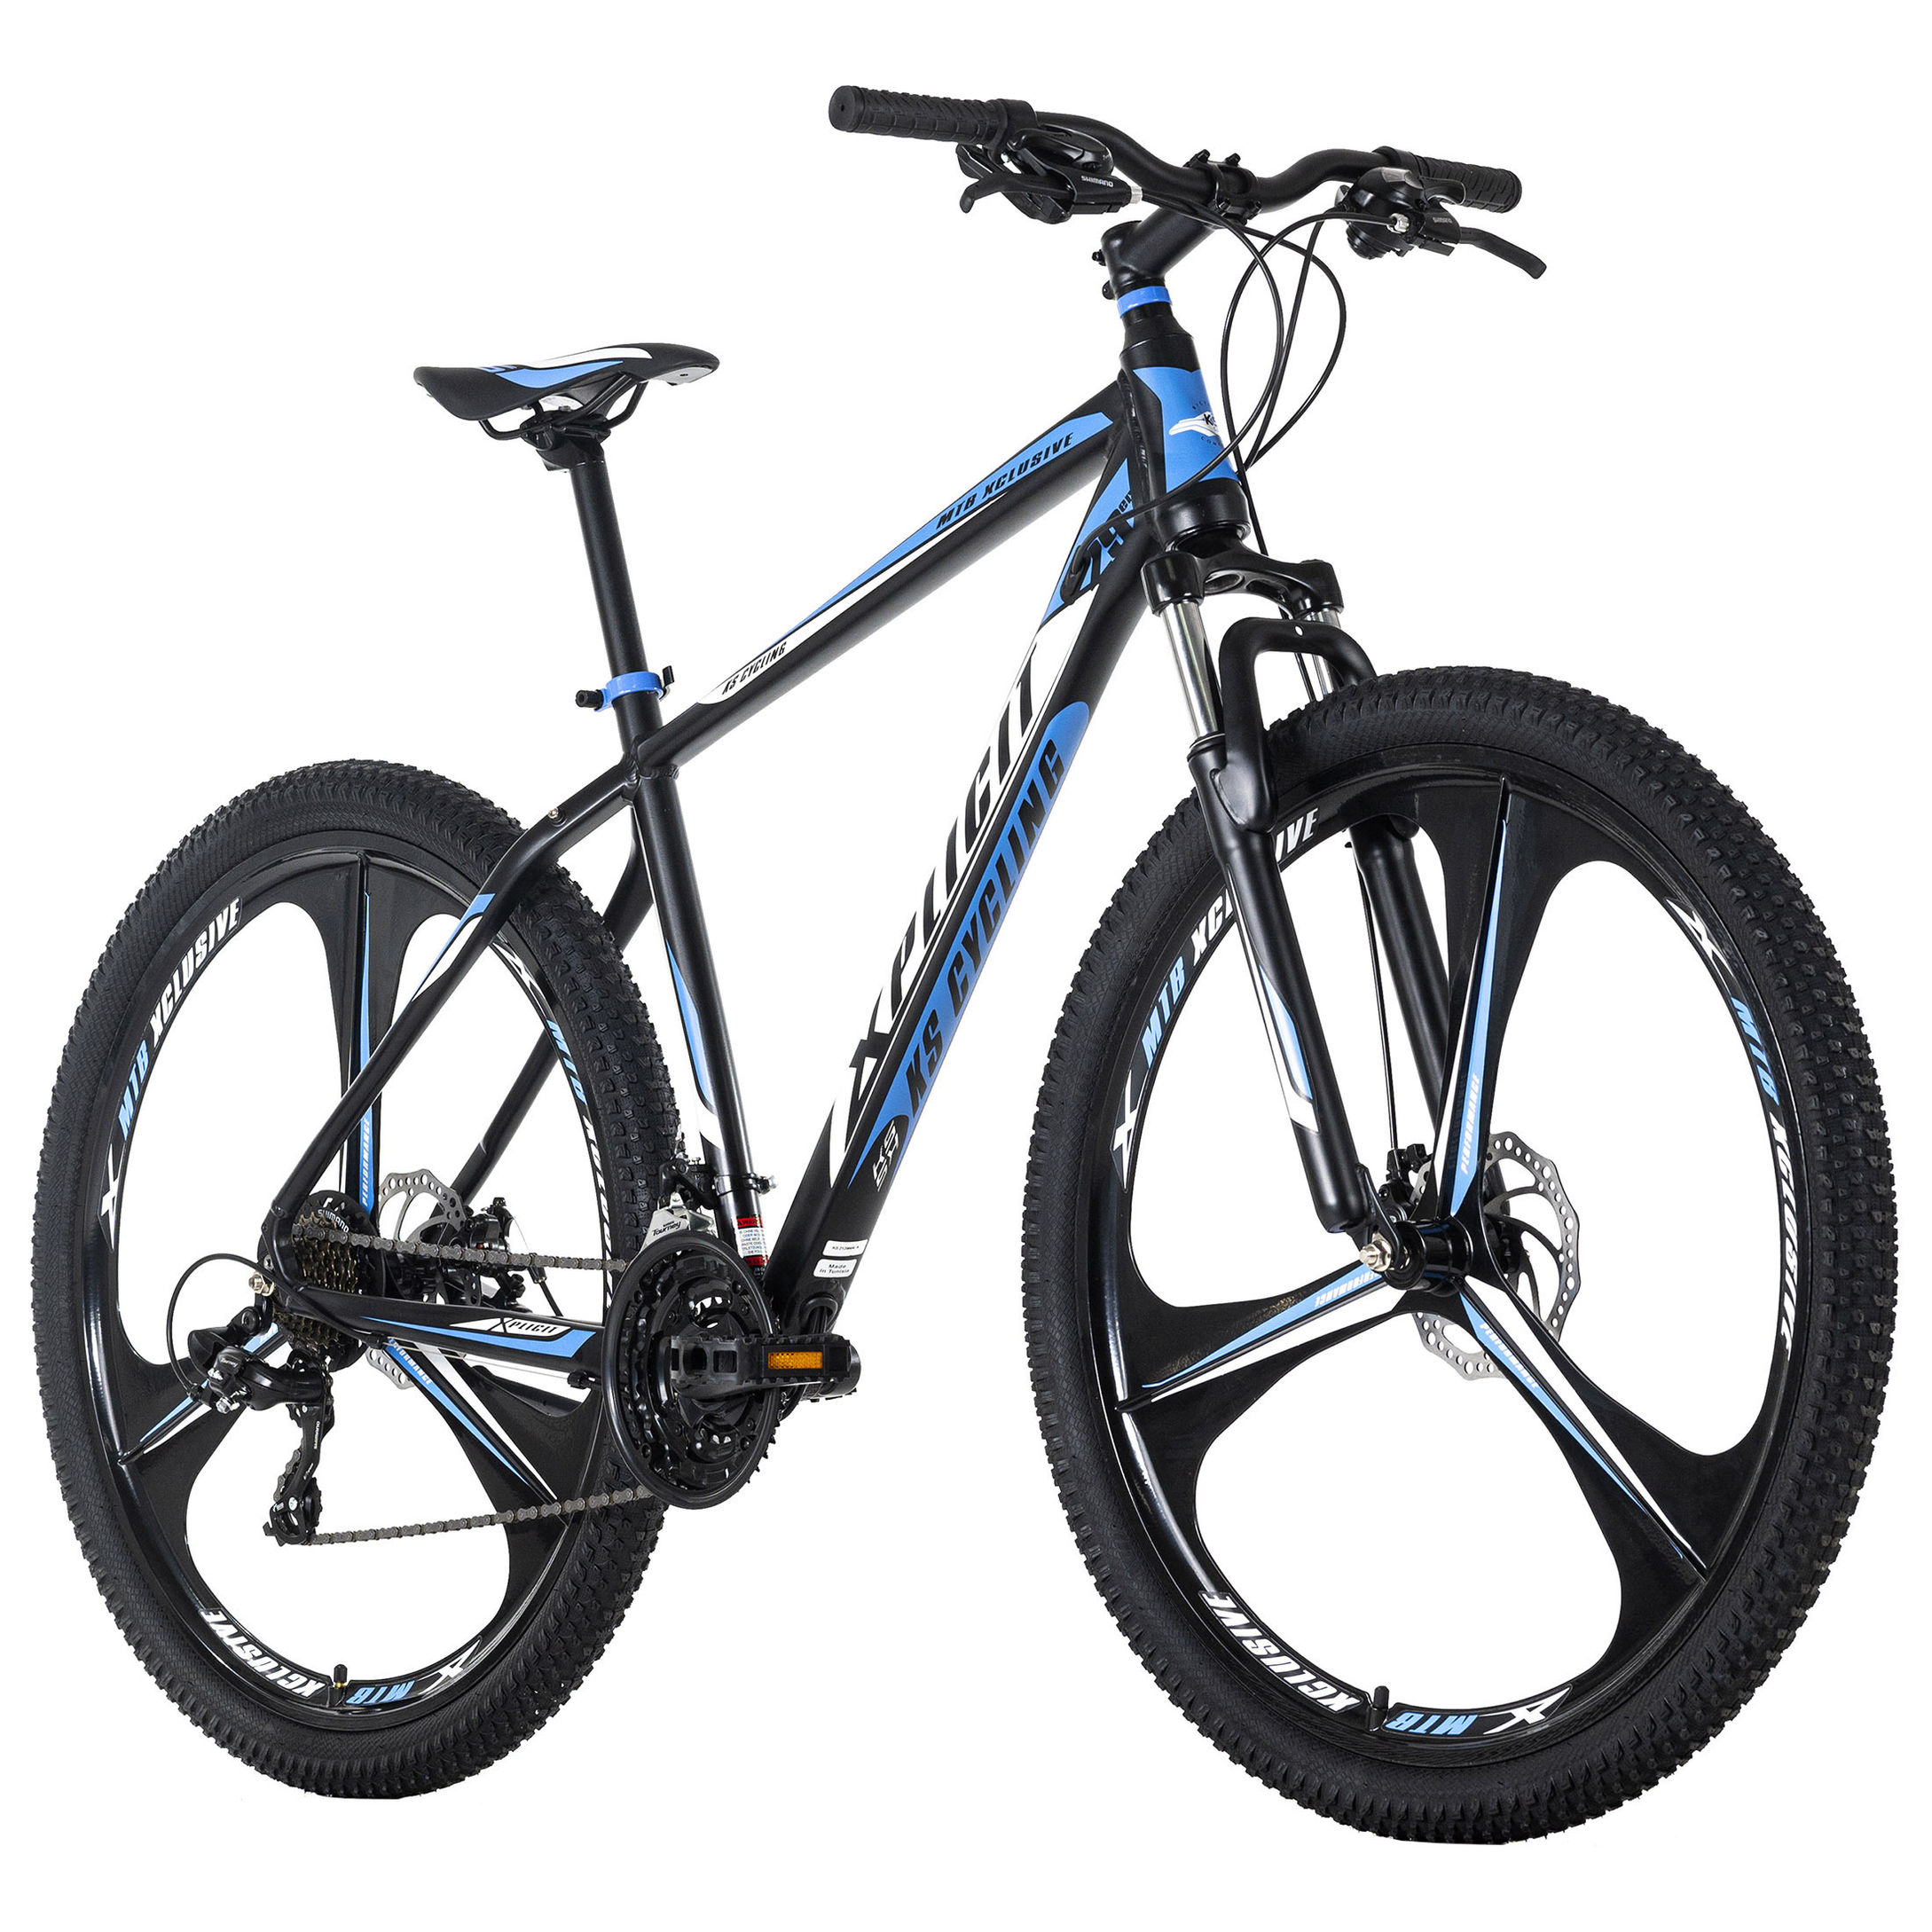 KS Cycling Mountainbike Hardtail 29 Zoll Xplicit schwarz-blau Größe: 48 cm  online kaufen - Orbisana